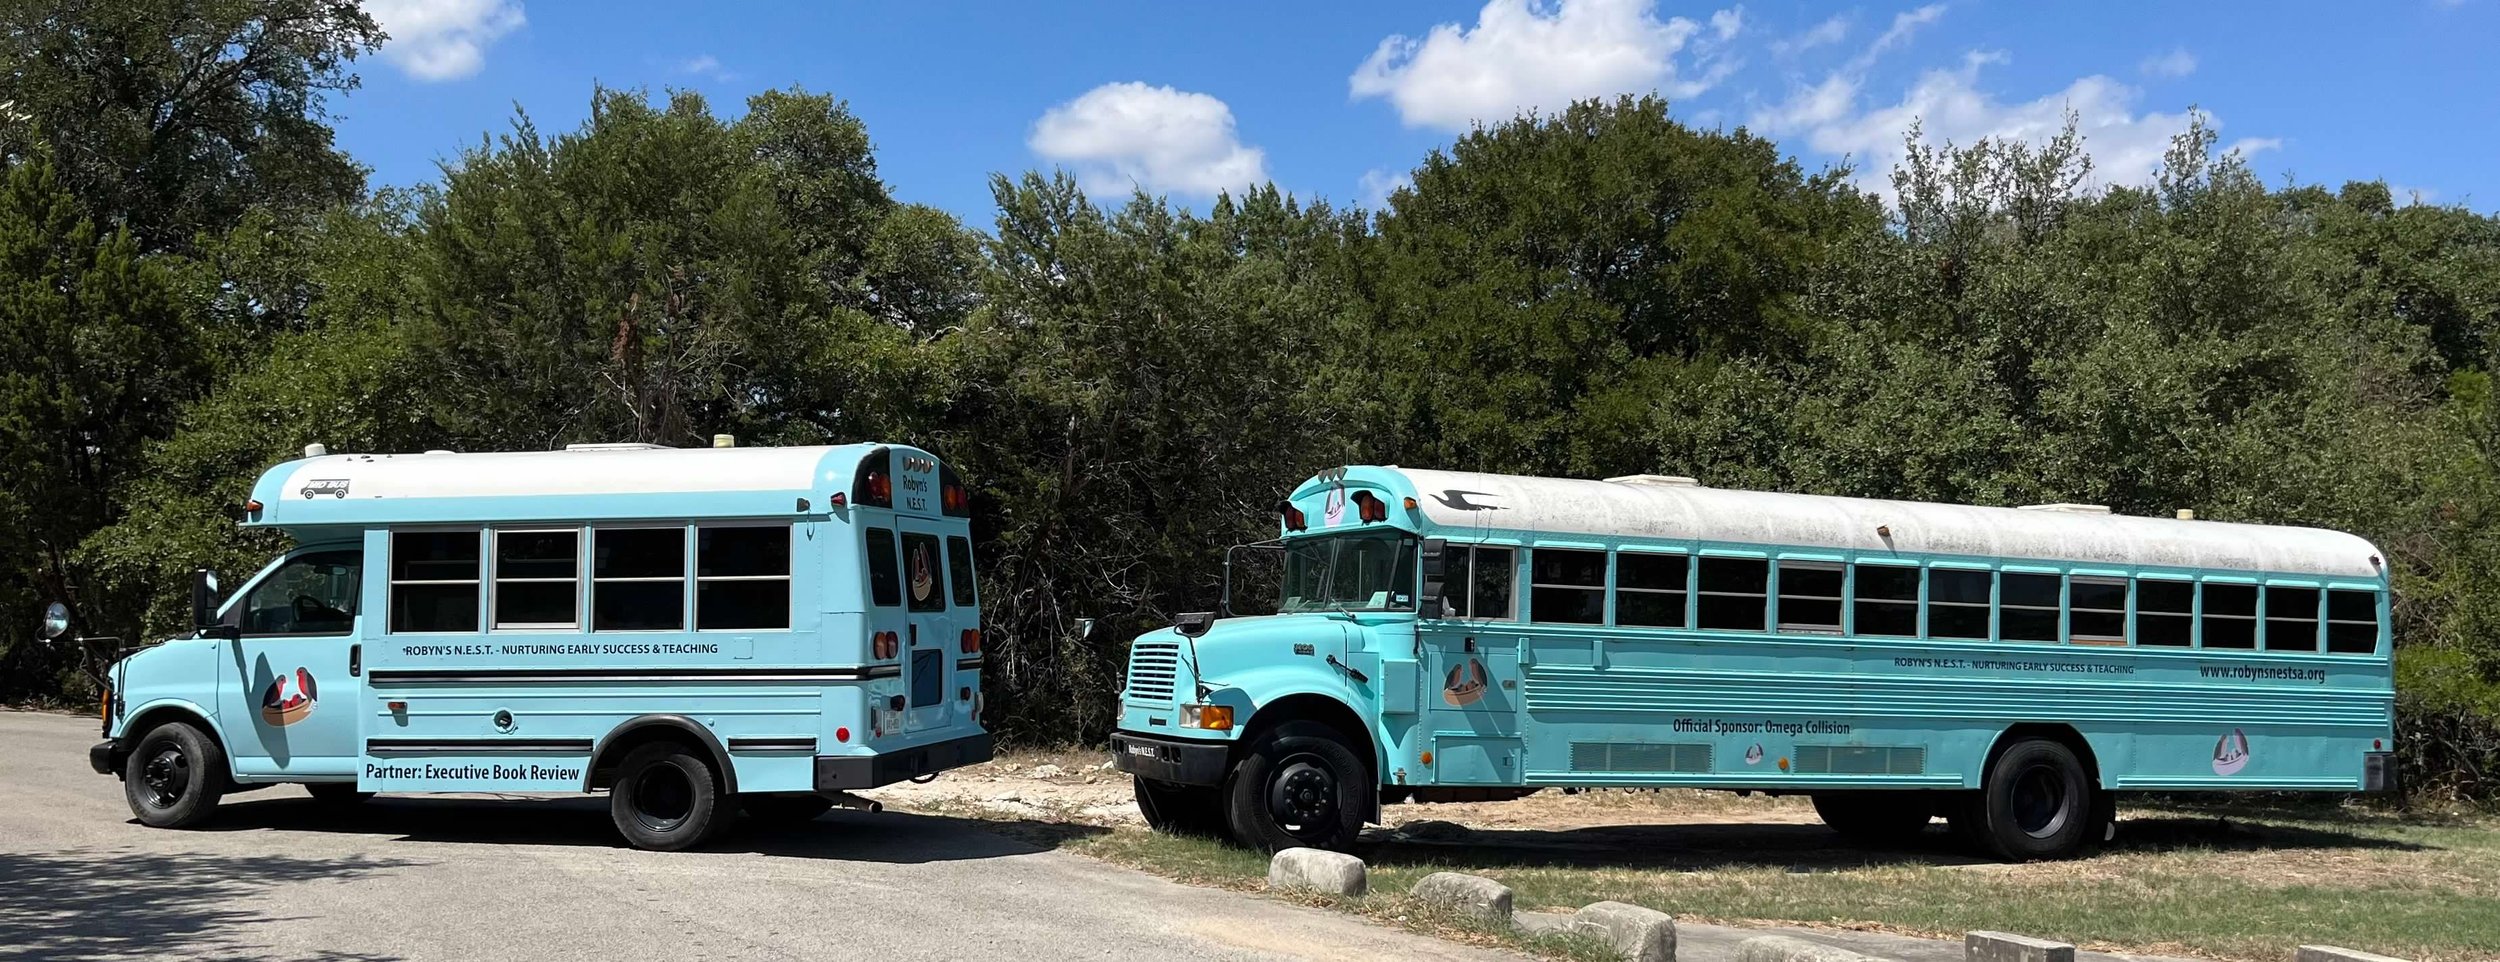 both buses at church.jpg